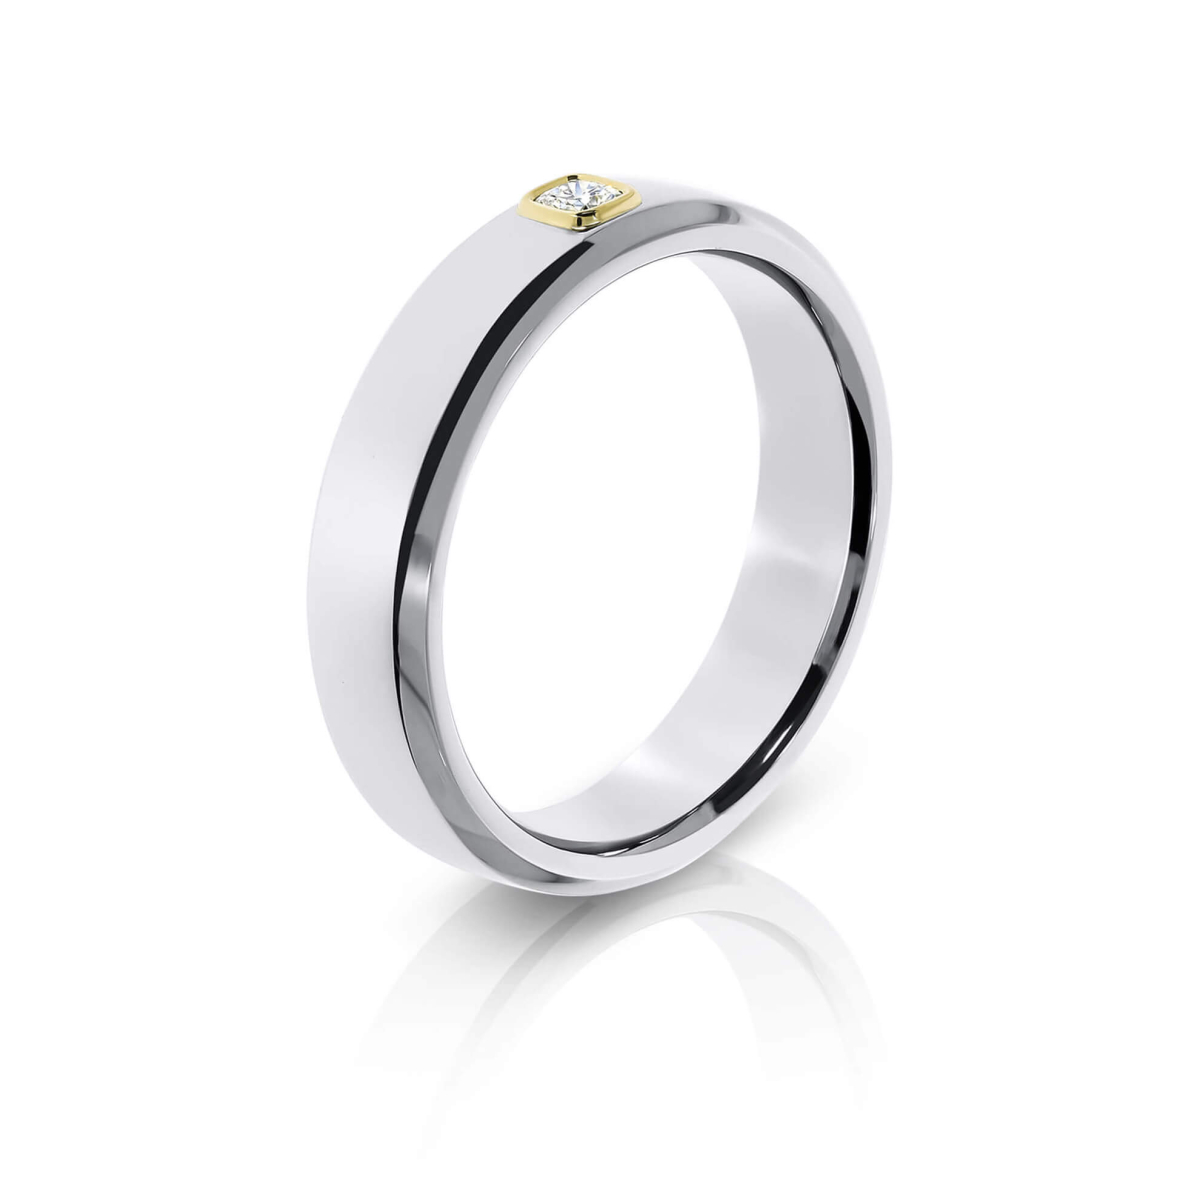 Bevelled Edge Wedding Ring With Bezel Set Cushion Cut Diamond